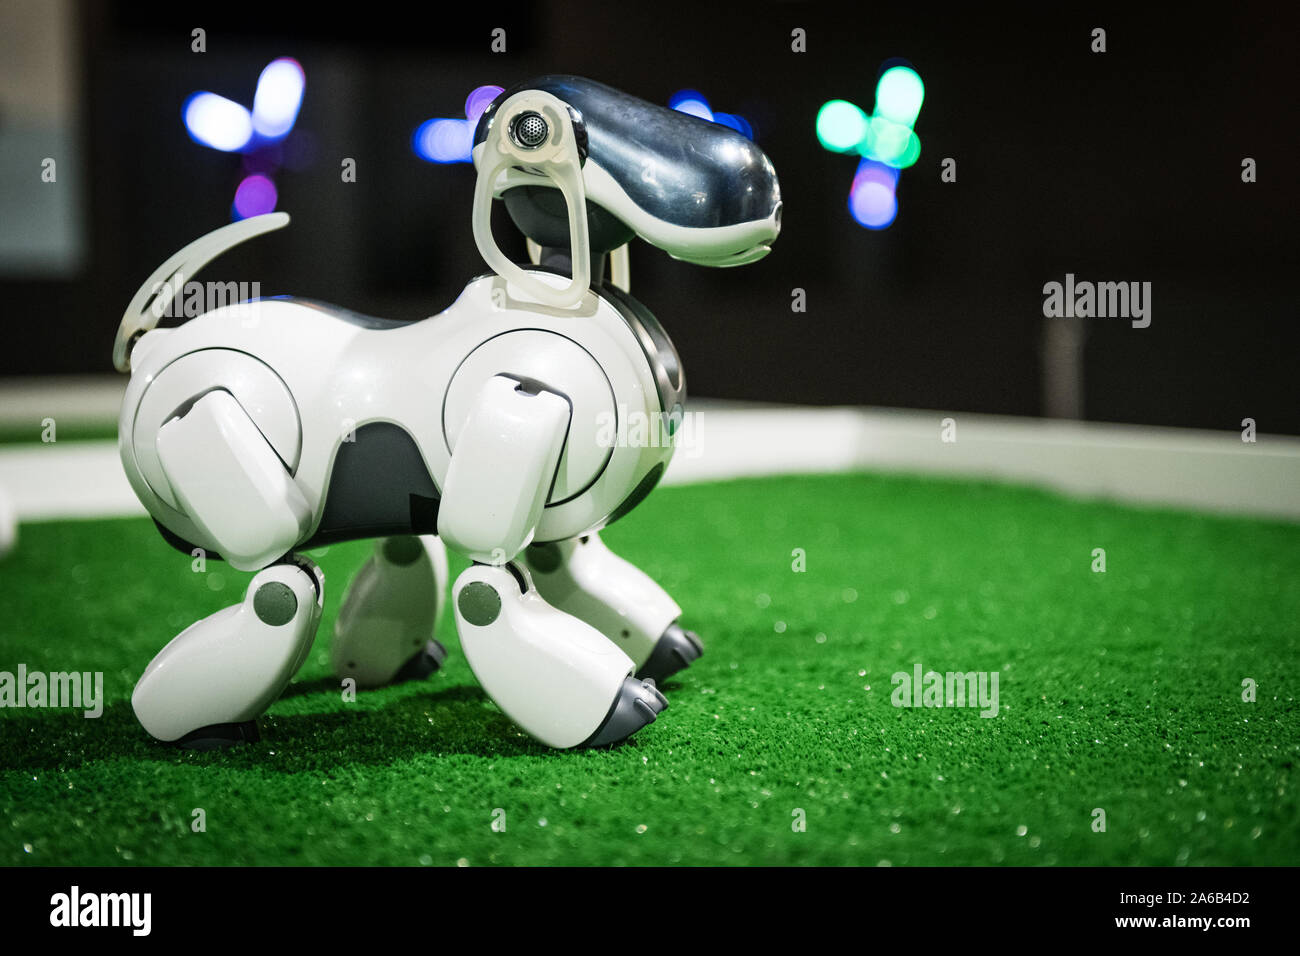 BRATISLAVA, SLOVAKIA - OCT 25, 2019: Robot dog AIBO demonstrates its skills at the mall in Bratislava, Slovakia Stock Photo